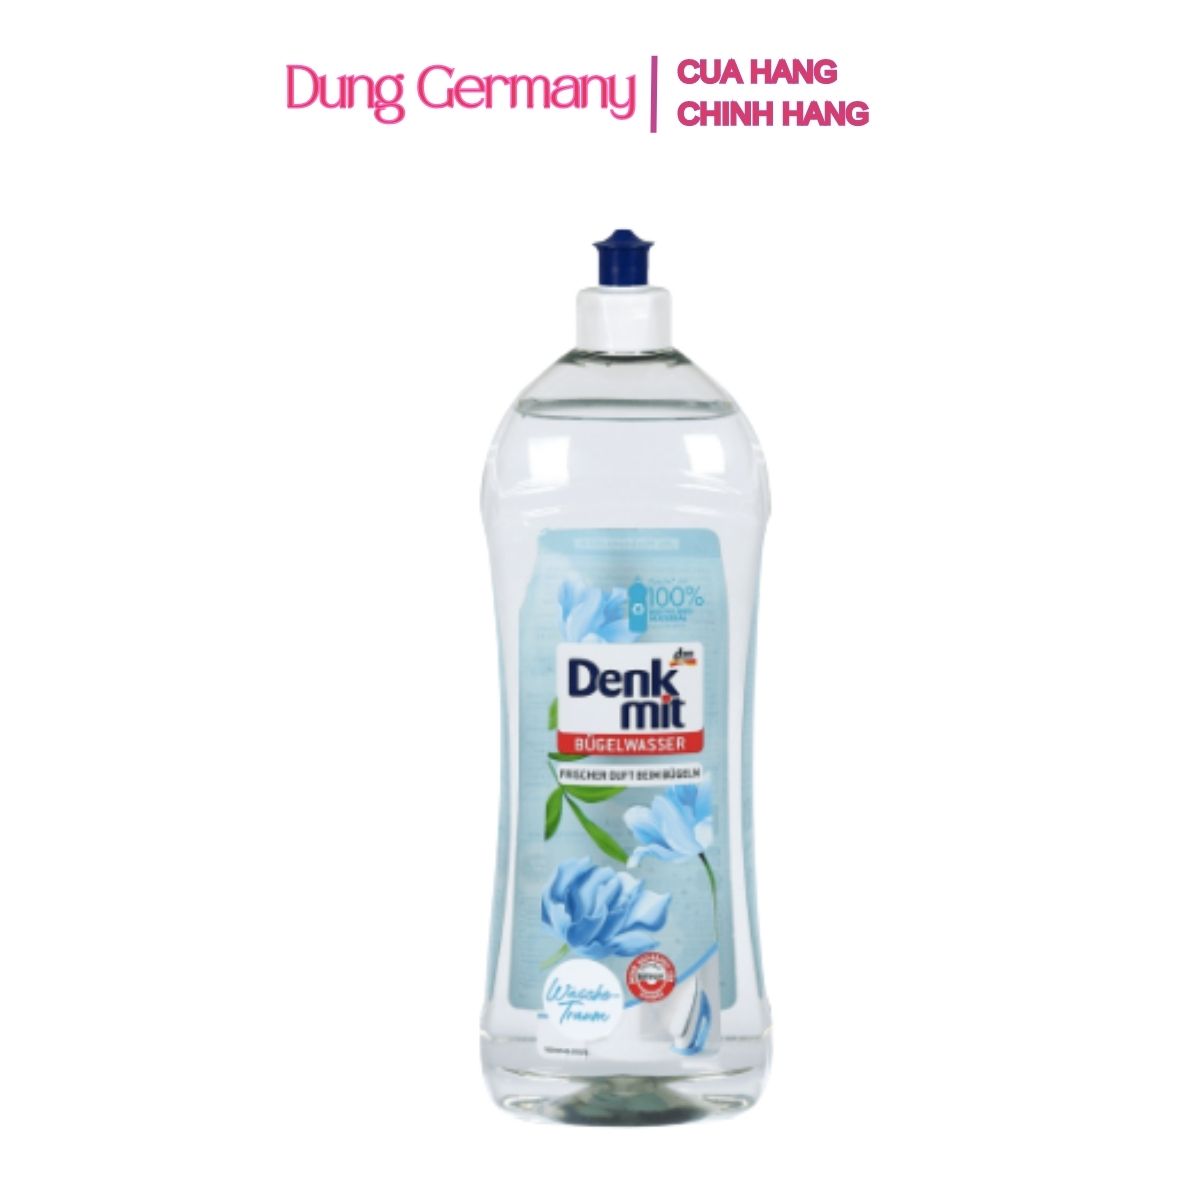 Nước thơm ủi quần áo, hương nước hoa Denk mit 1L - Dung Germany